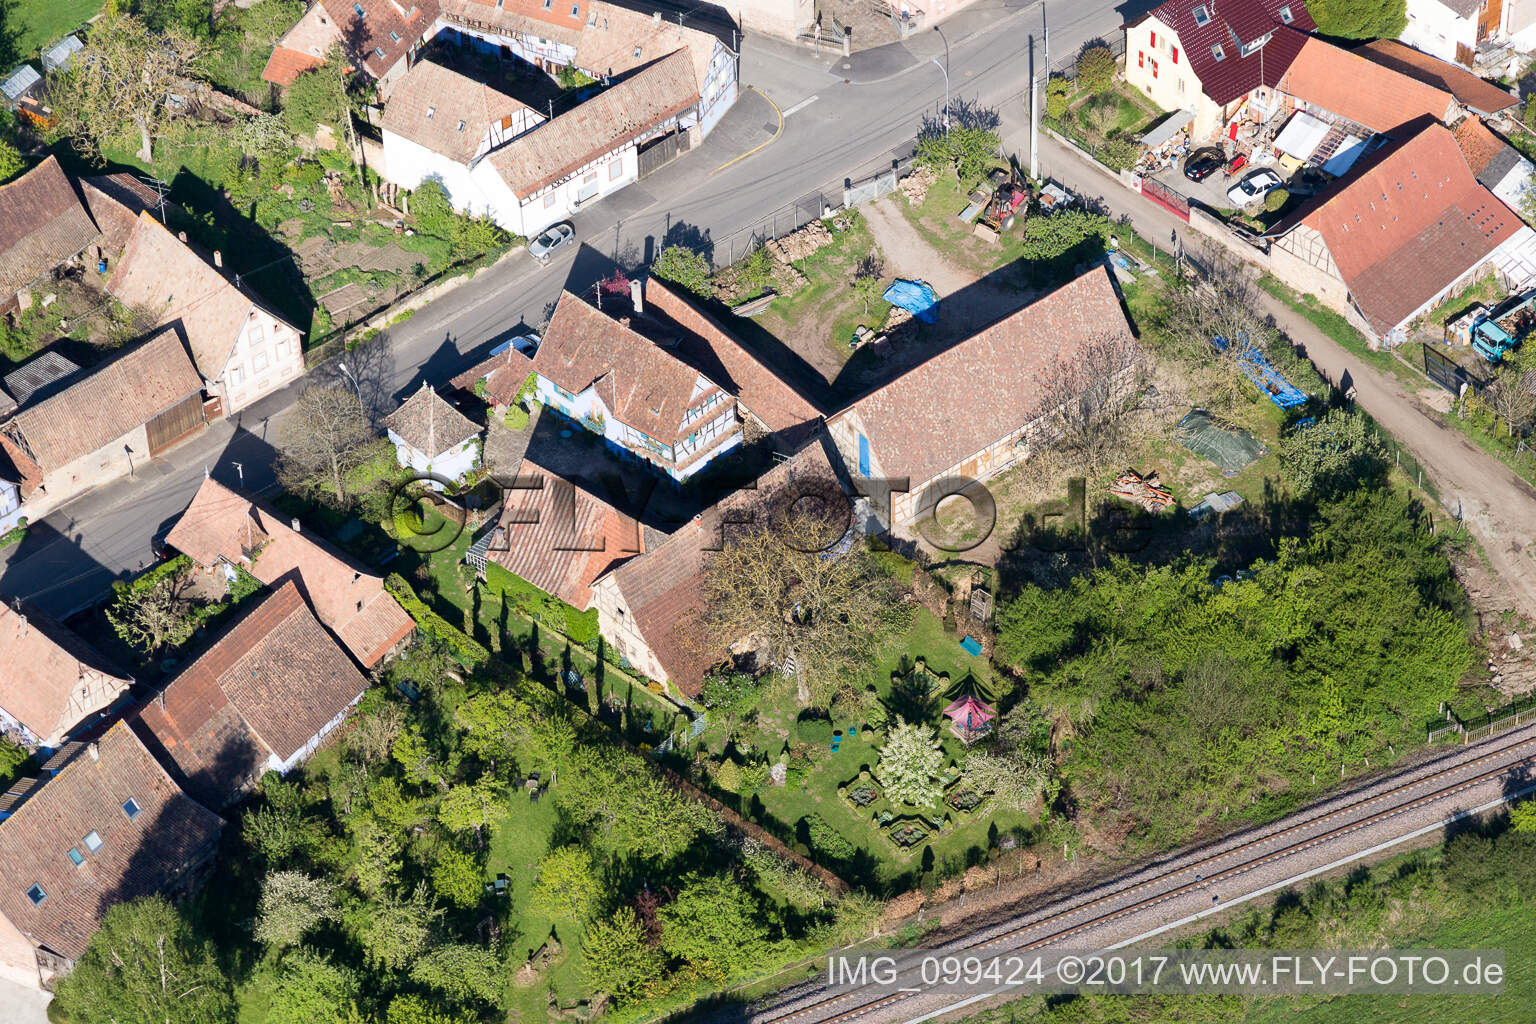 Uttenhoffen im Bundesland Bas-Rhin, Frankreich von der Drohne aus gesehen